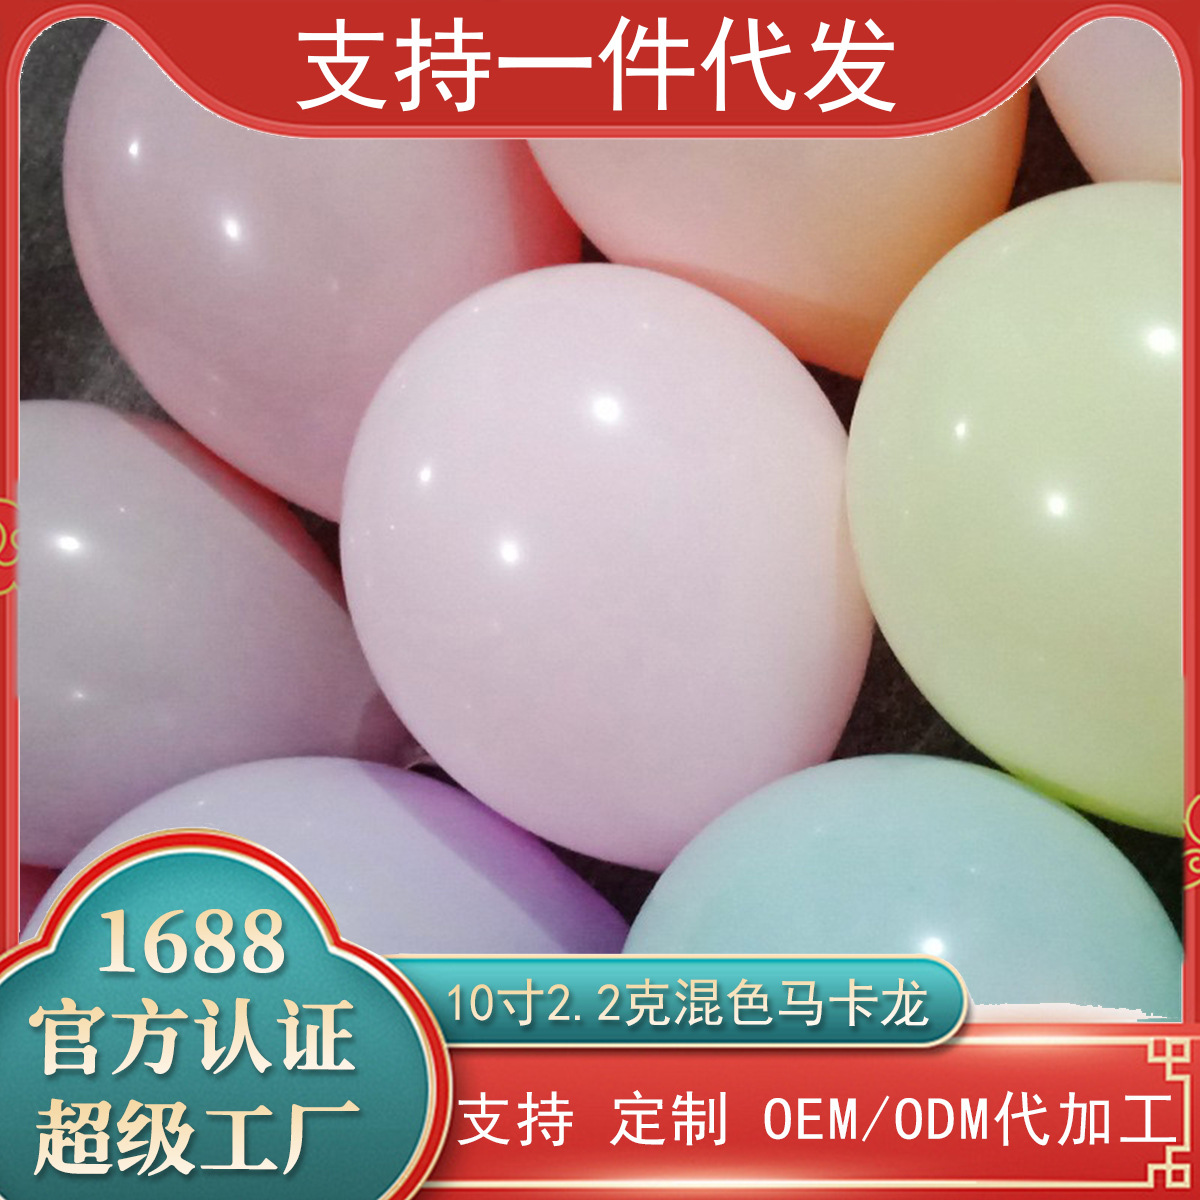 气球/气球装饰/氢气球/气球玩具/波波球产品图